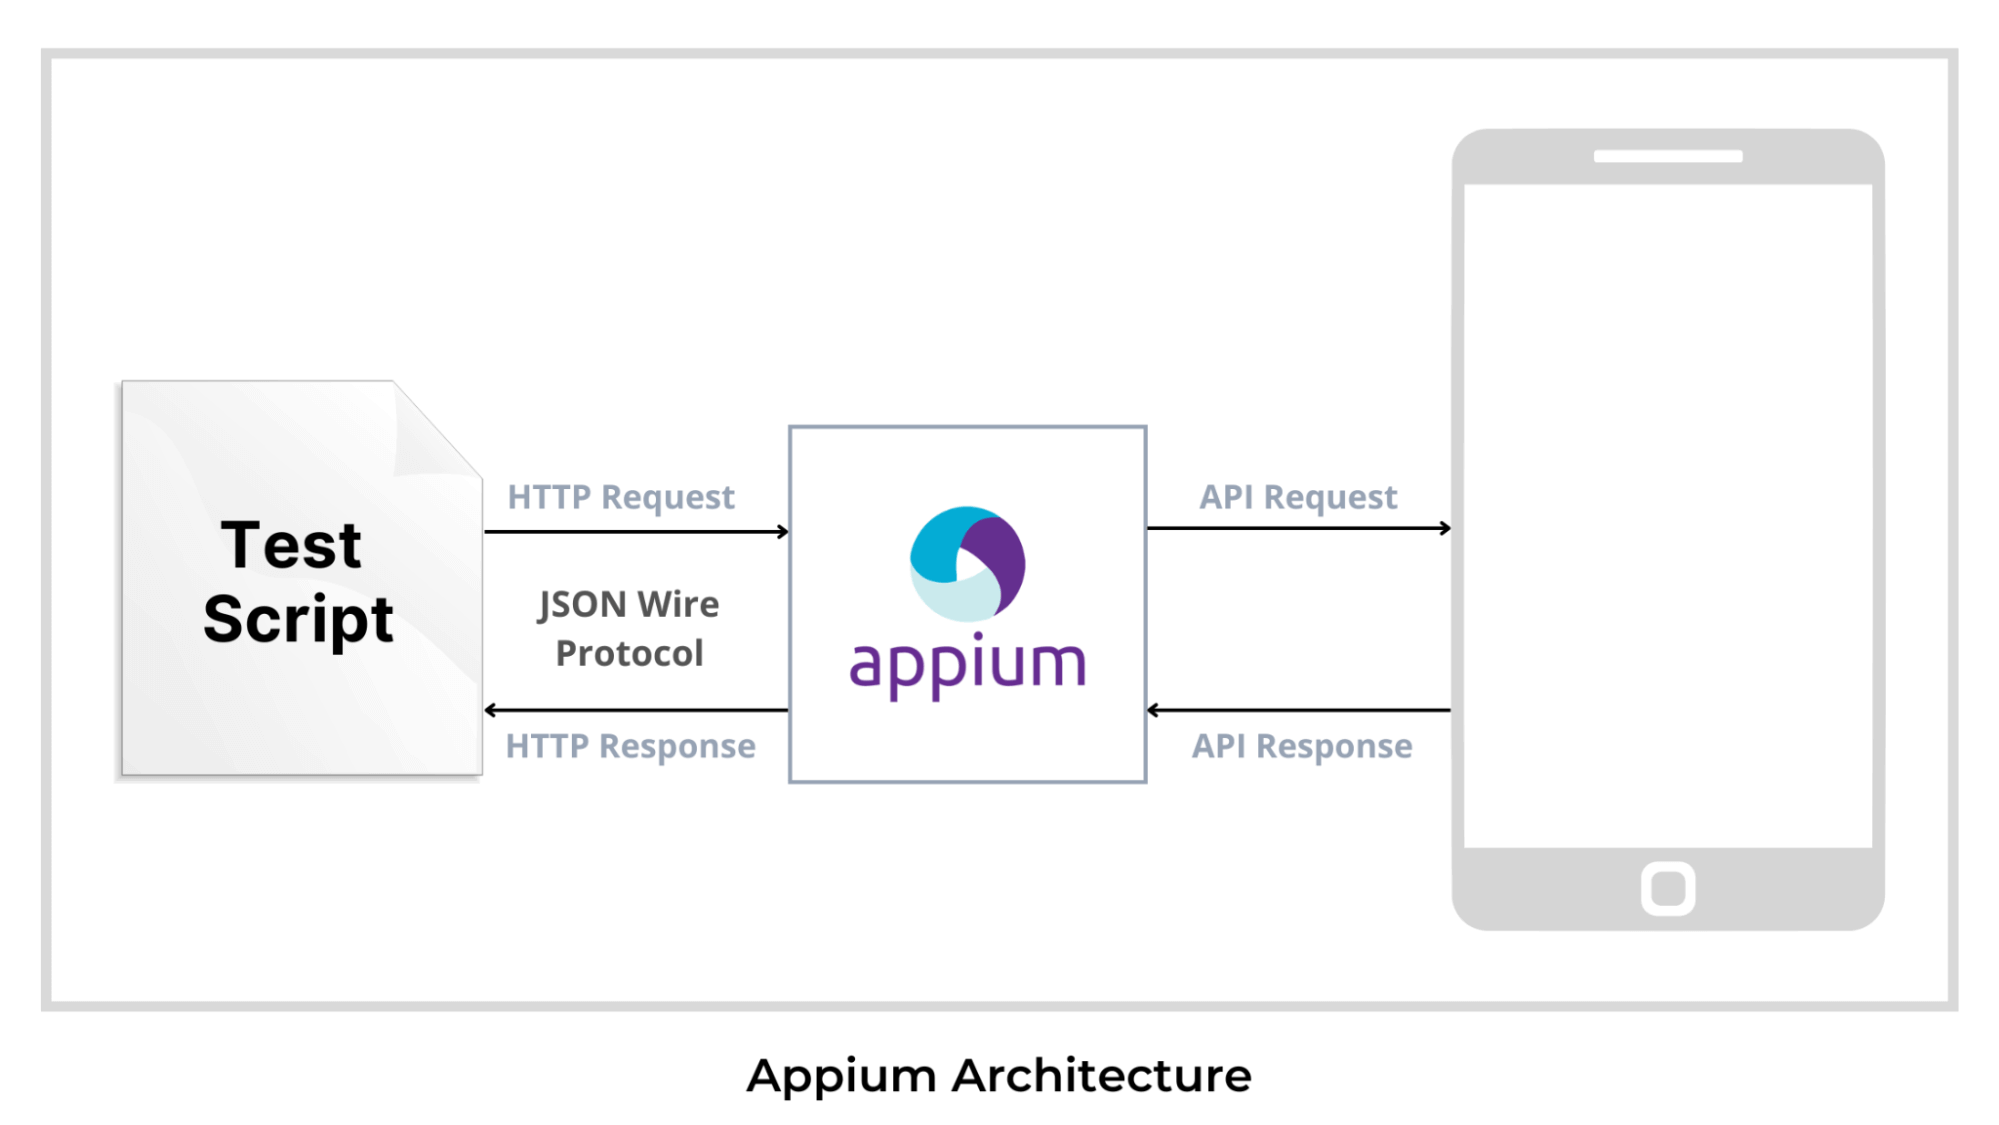 Appium architecture diagram